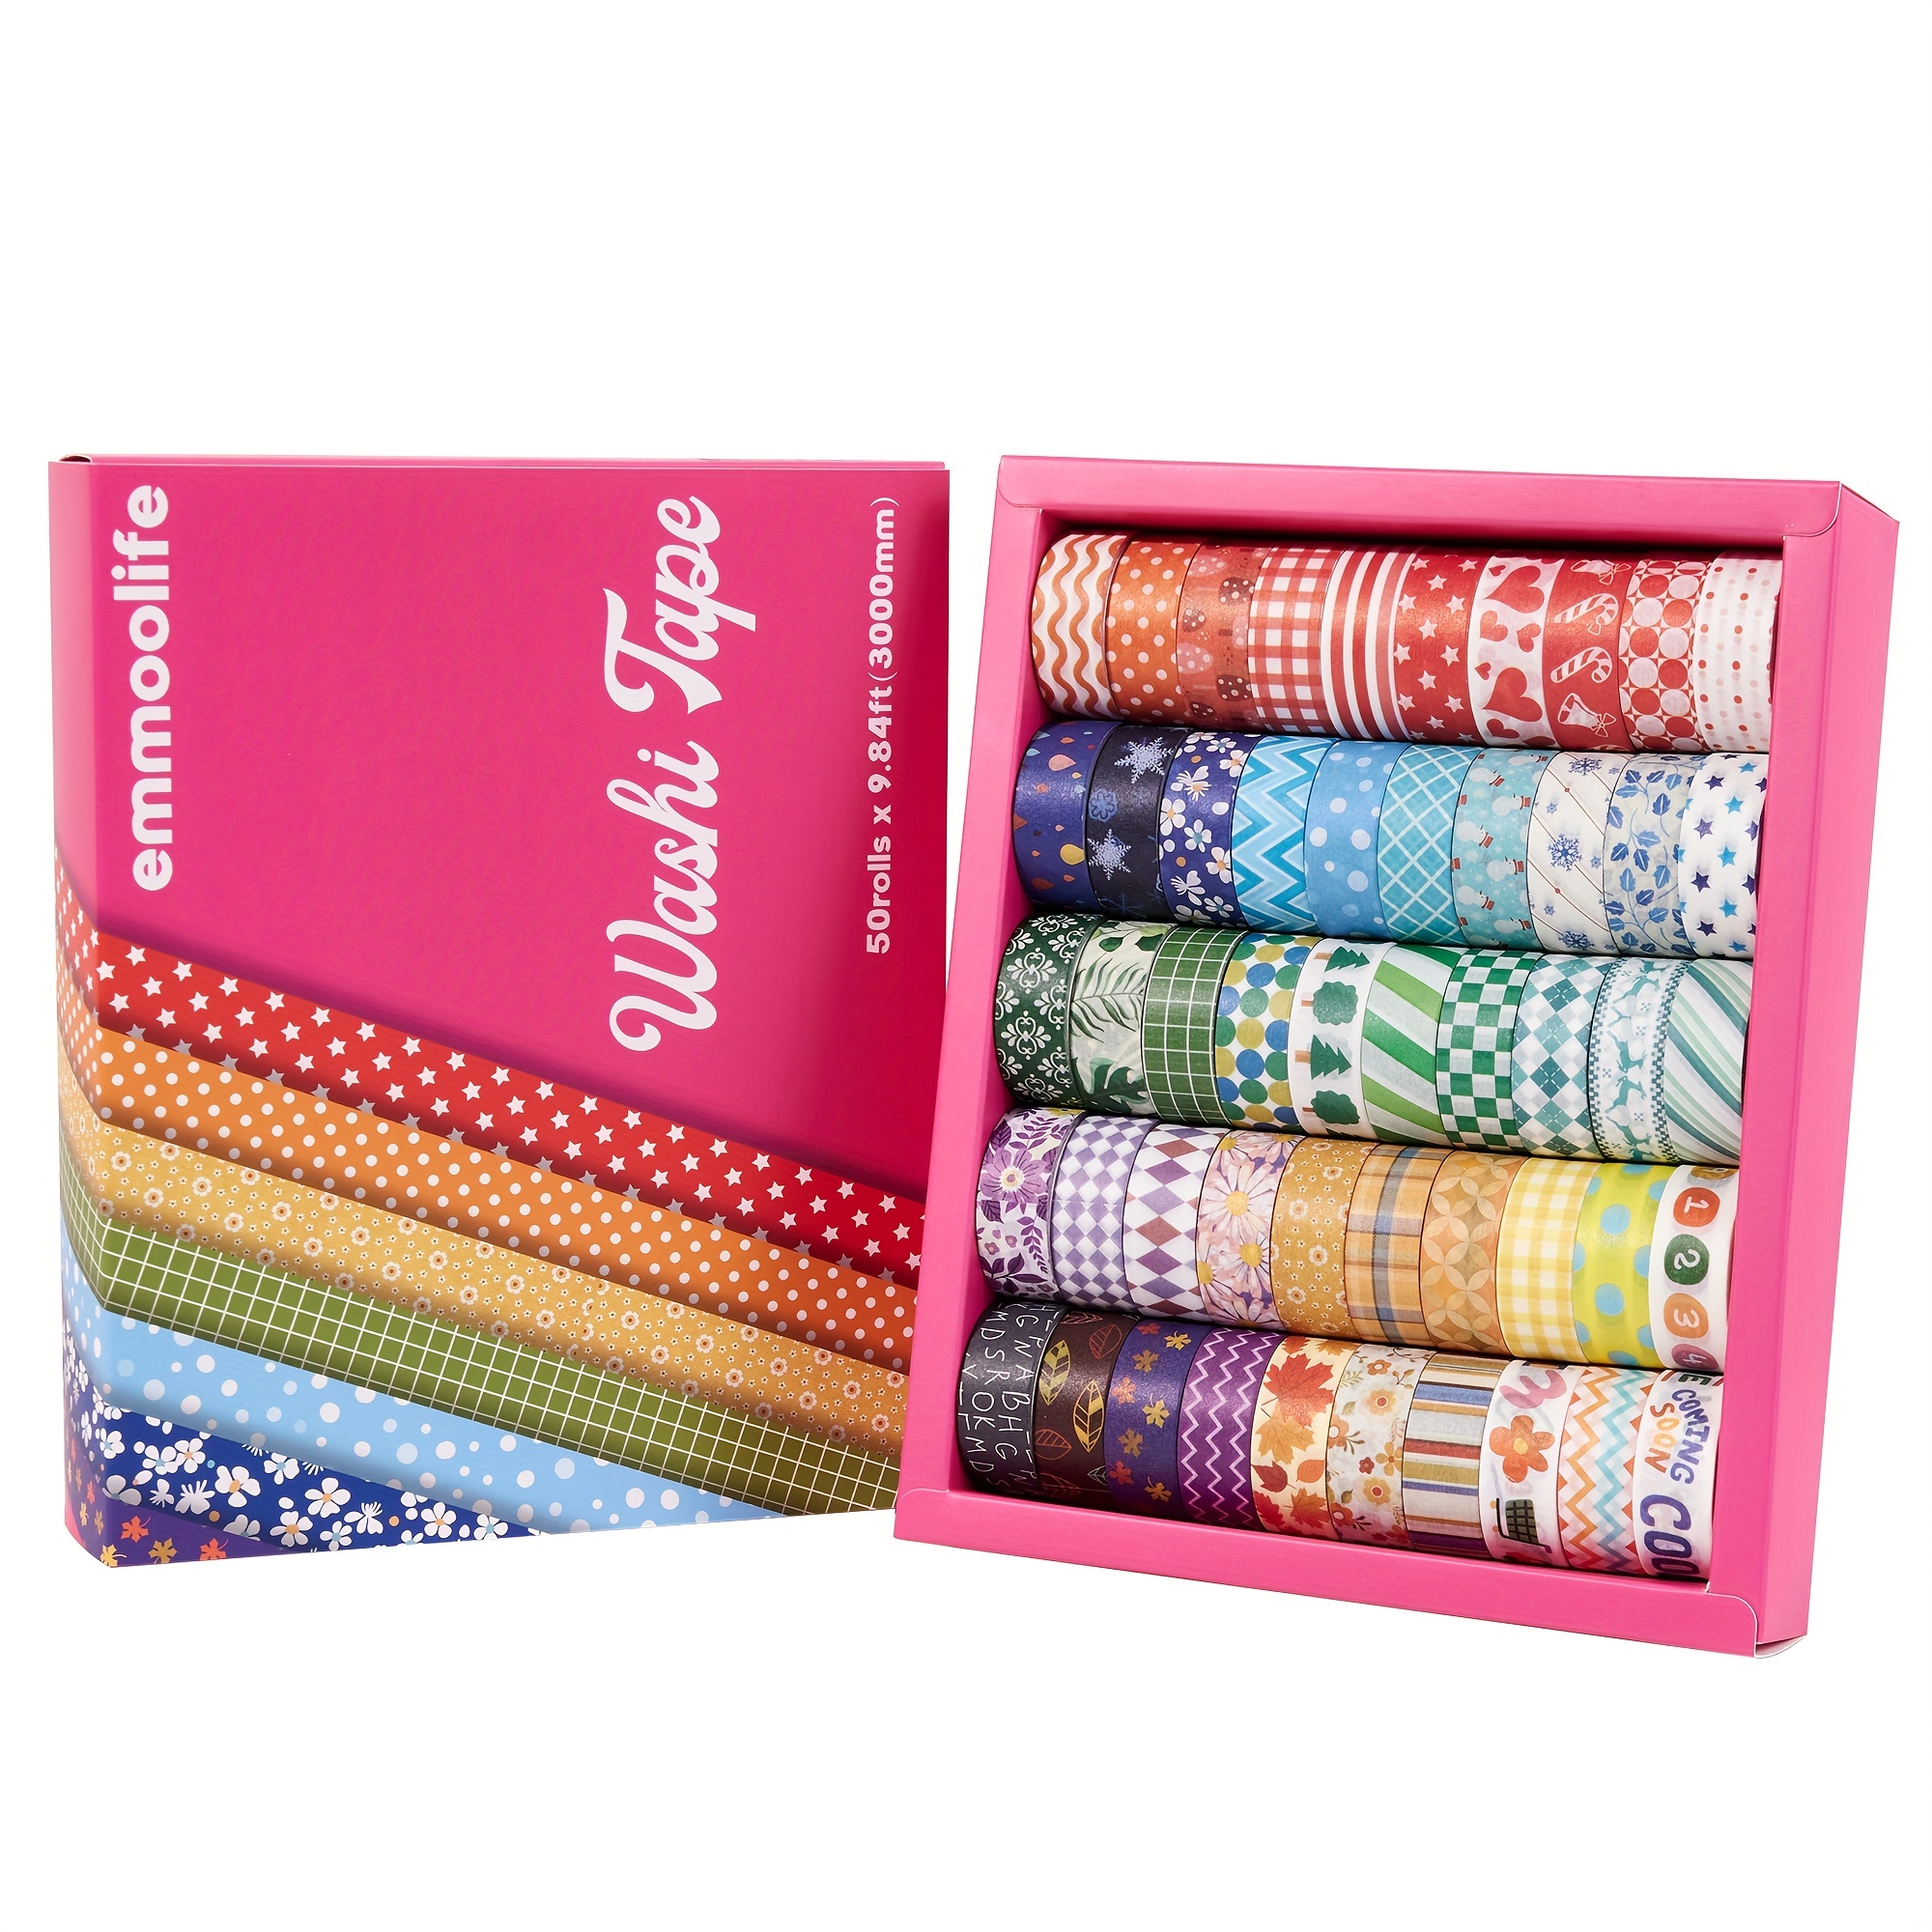 Juego de 40 rollos de cinta adhesiva Washi, cinta adhesiva decorativa para  manualidades, embellecer diarios personales y planificadores.